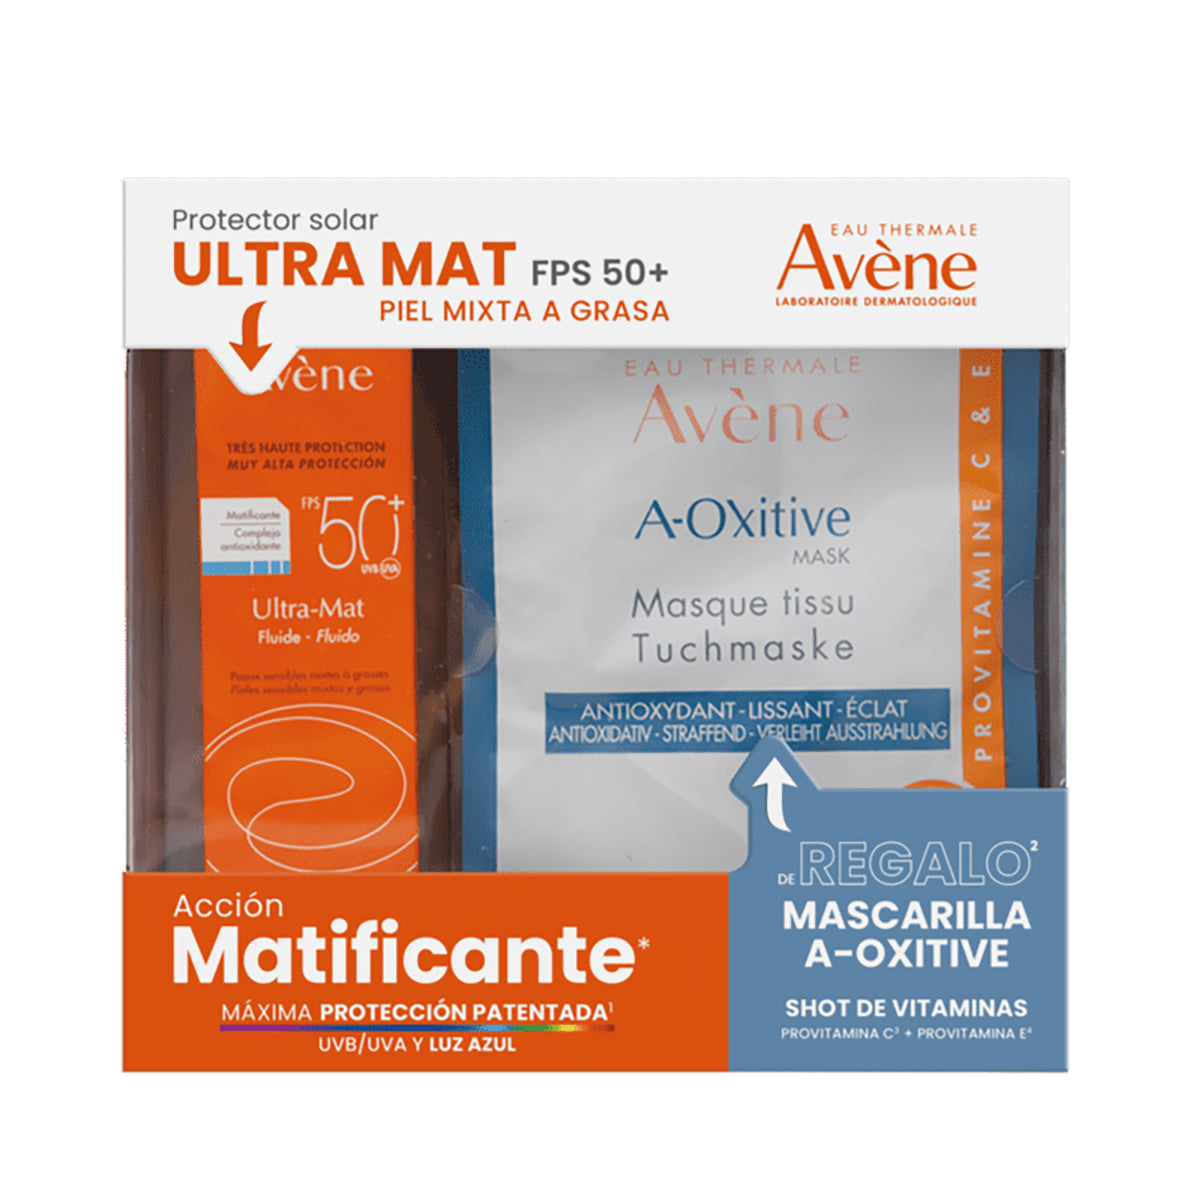 Avene Kit protector solar ultra mat 50ml + Mascarilla a-oxitive 18ml.